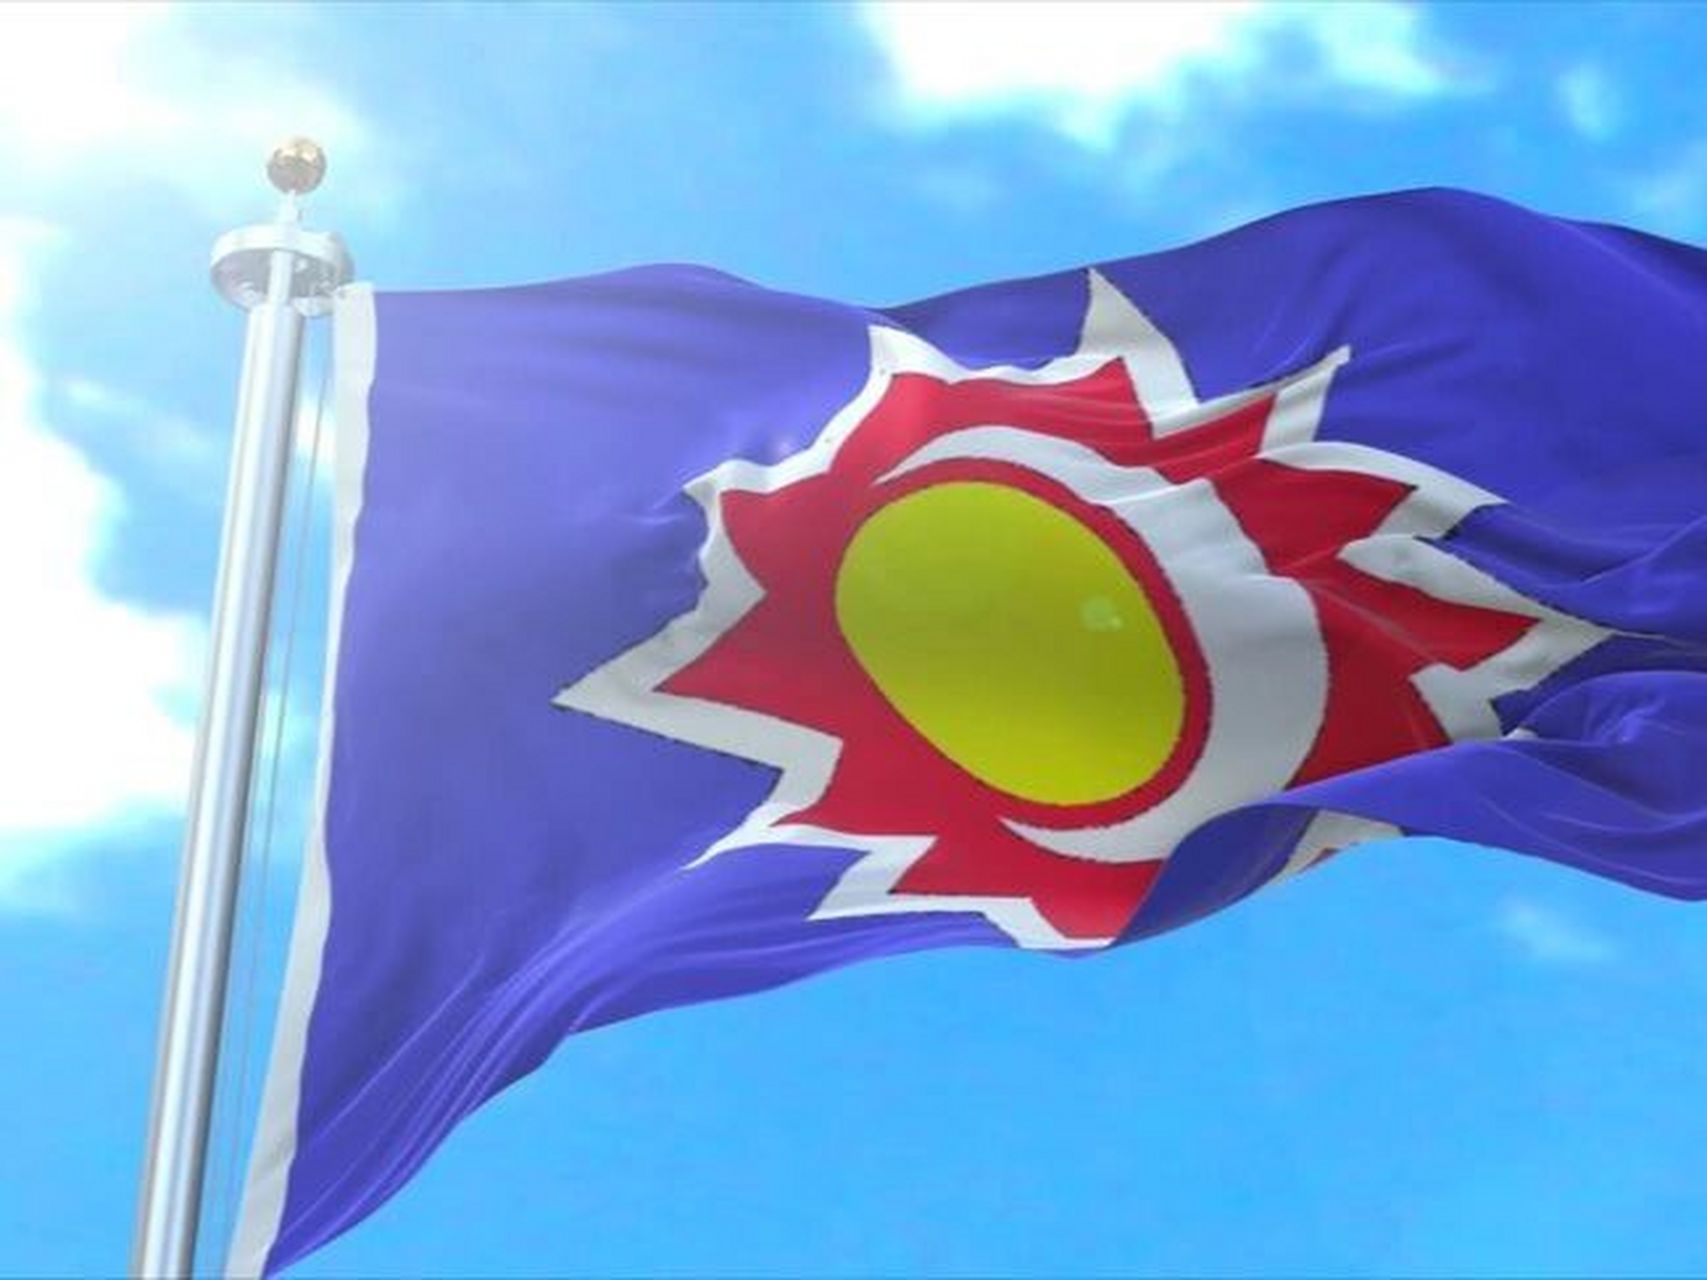 旗帜:明朝 日月旗是明朝的國旗,由明朝的國號「明」字的意義演化而來,